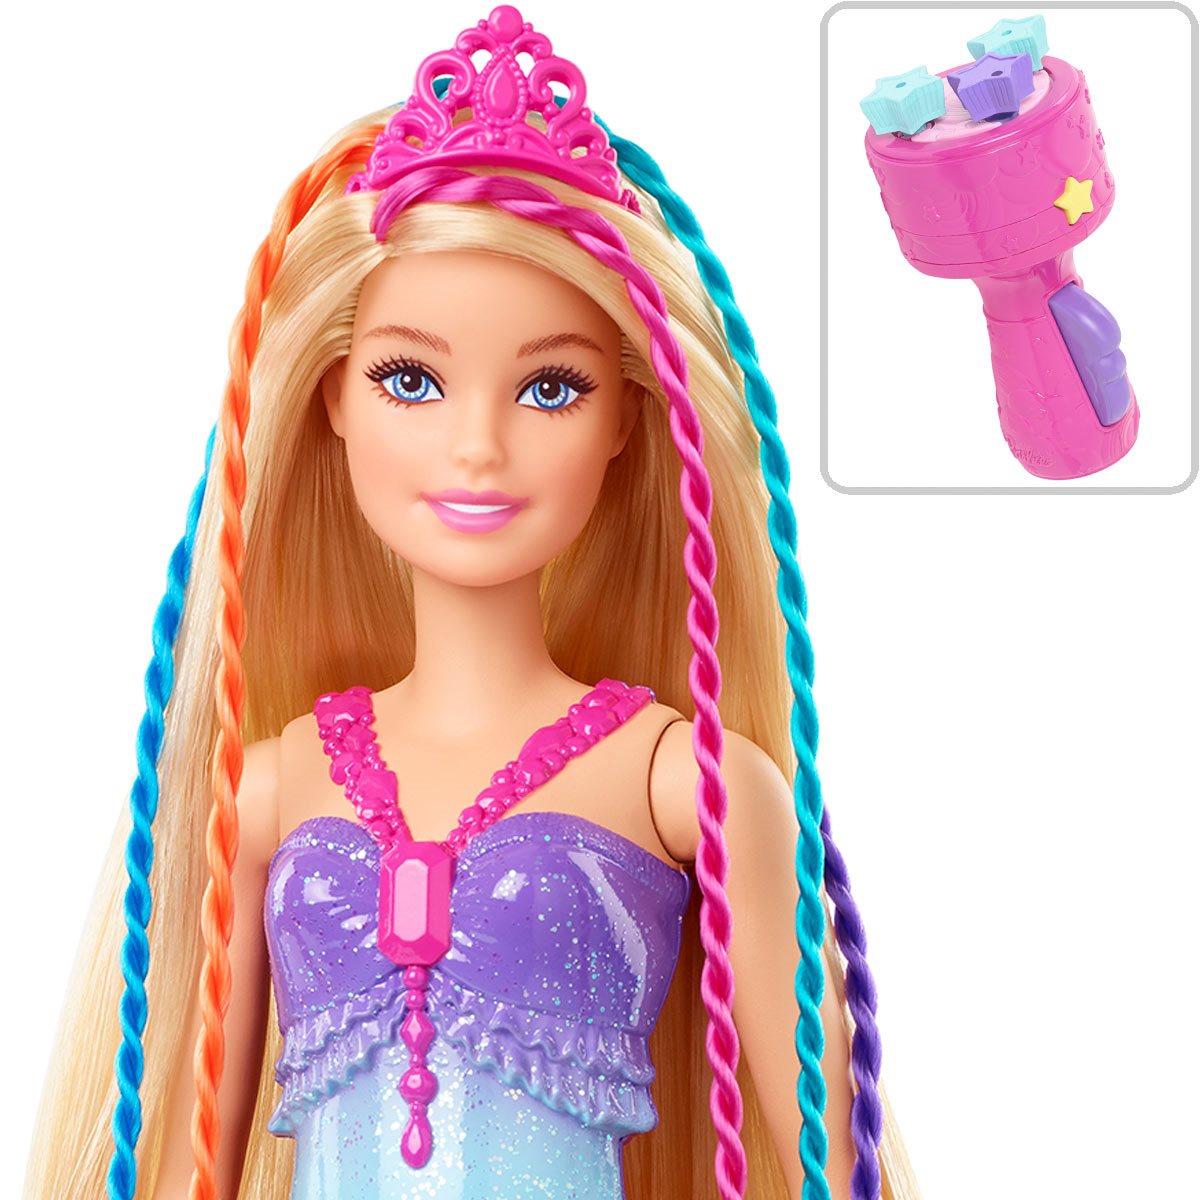 Barbie Twist 'n Style Princess Hairstyling